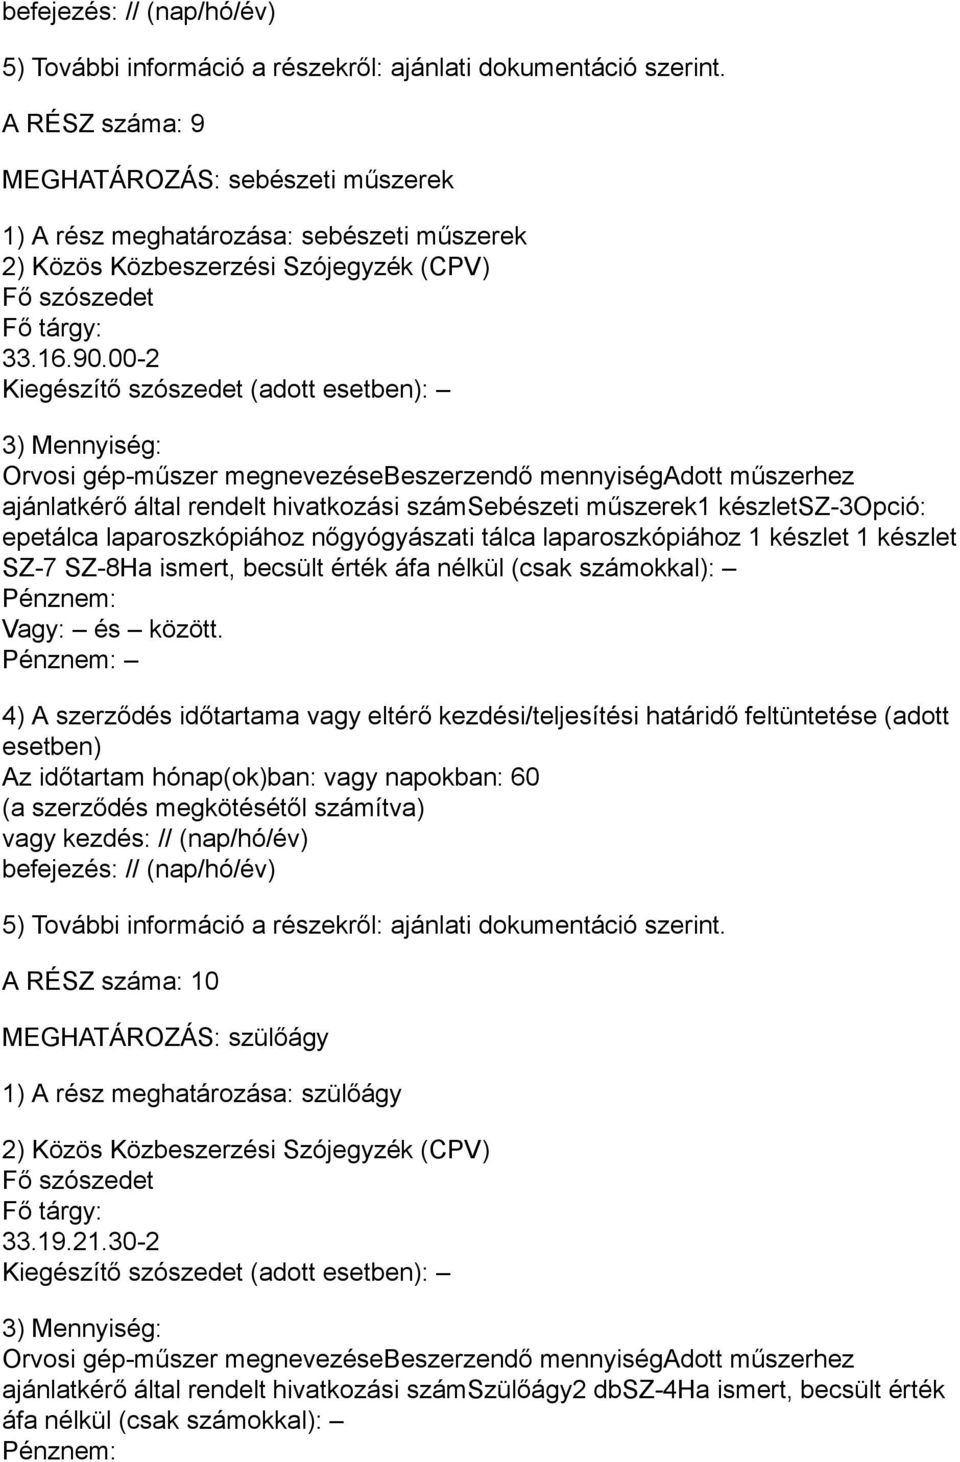 nőgyógyászati tálca laparoszkópiához 1 készlet 1 készlet SZ-7 SZ-8Ha ismert, becsült érték áfa nélkül (csak számokkal): A RÉSZ száma: 10